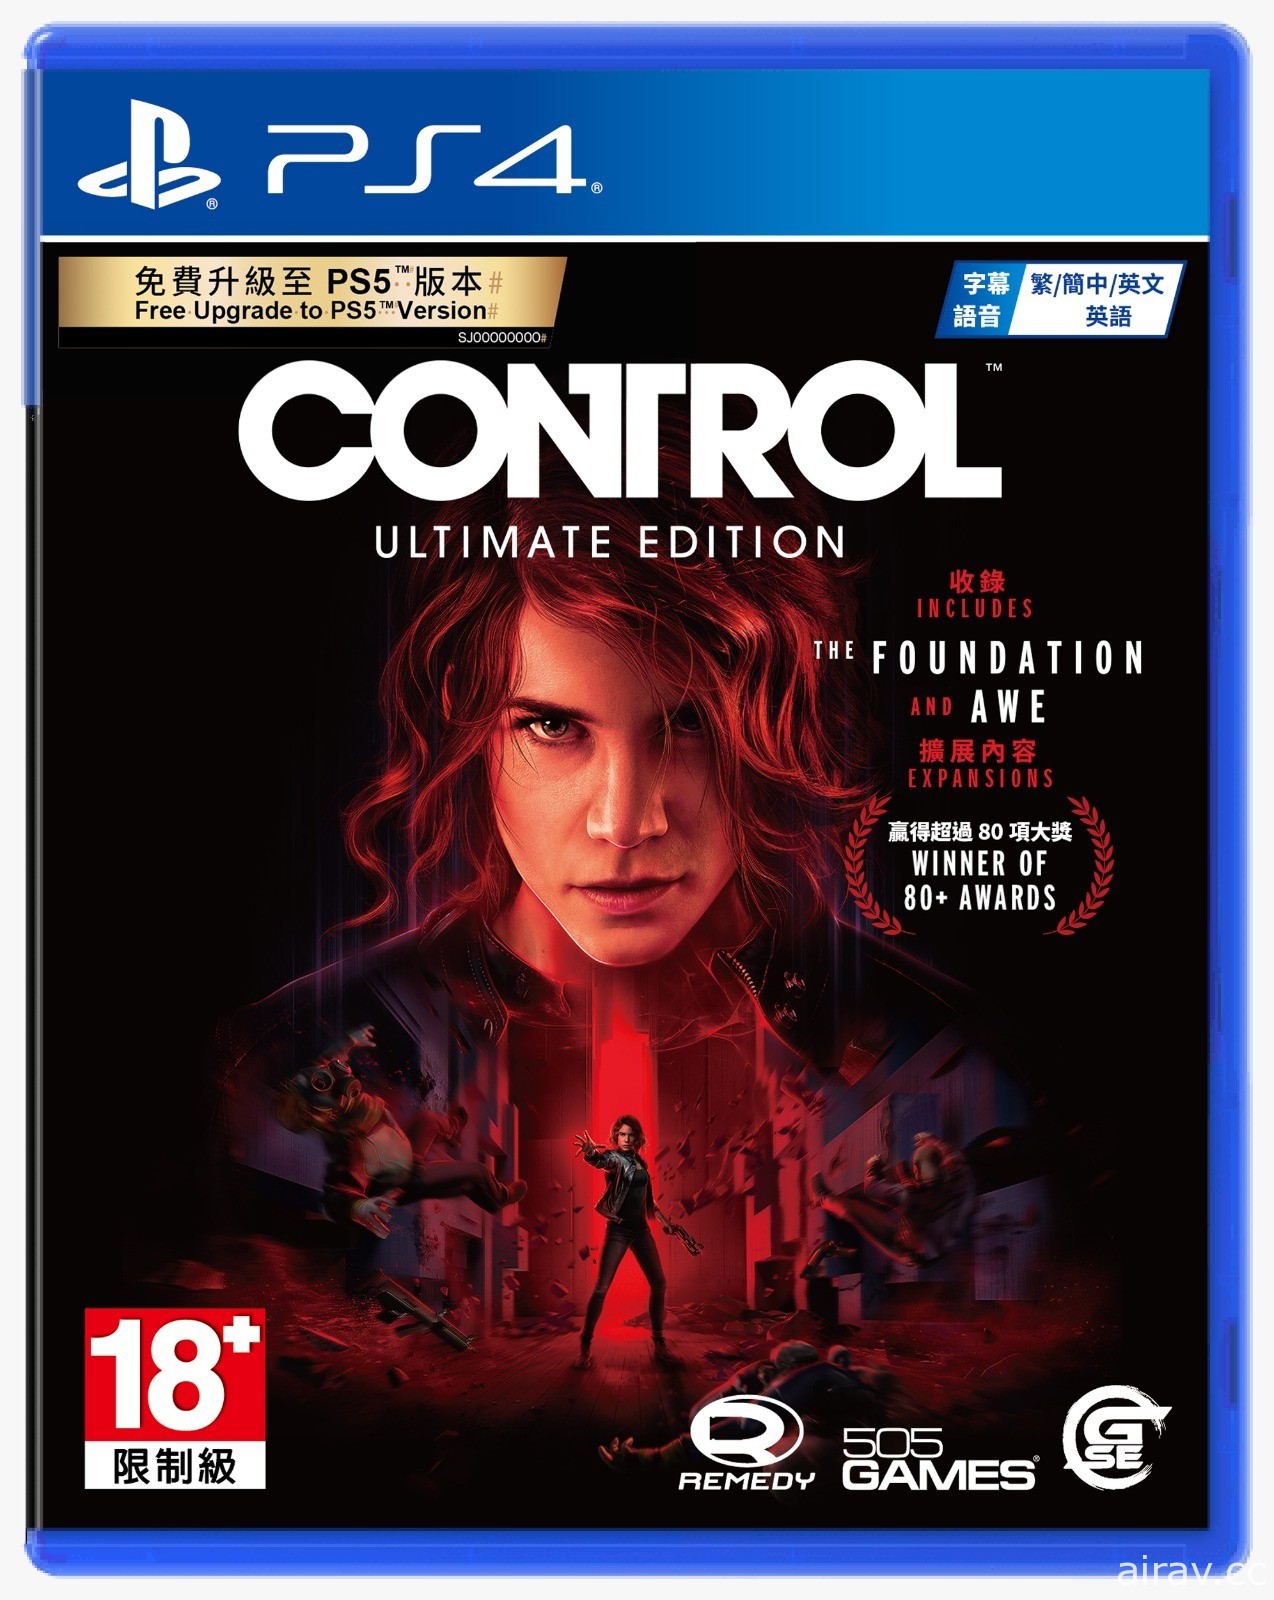 《控制 CONTROL 終極版》PS4 盒裝版即將推出 可免費升級至 PS5 版本